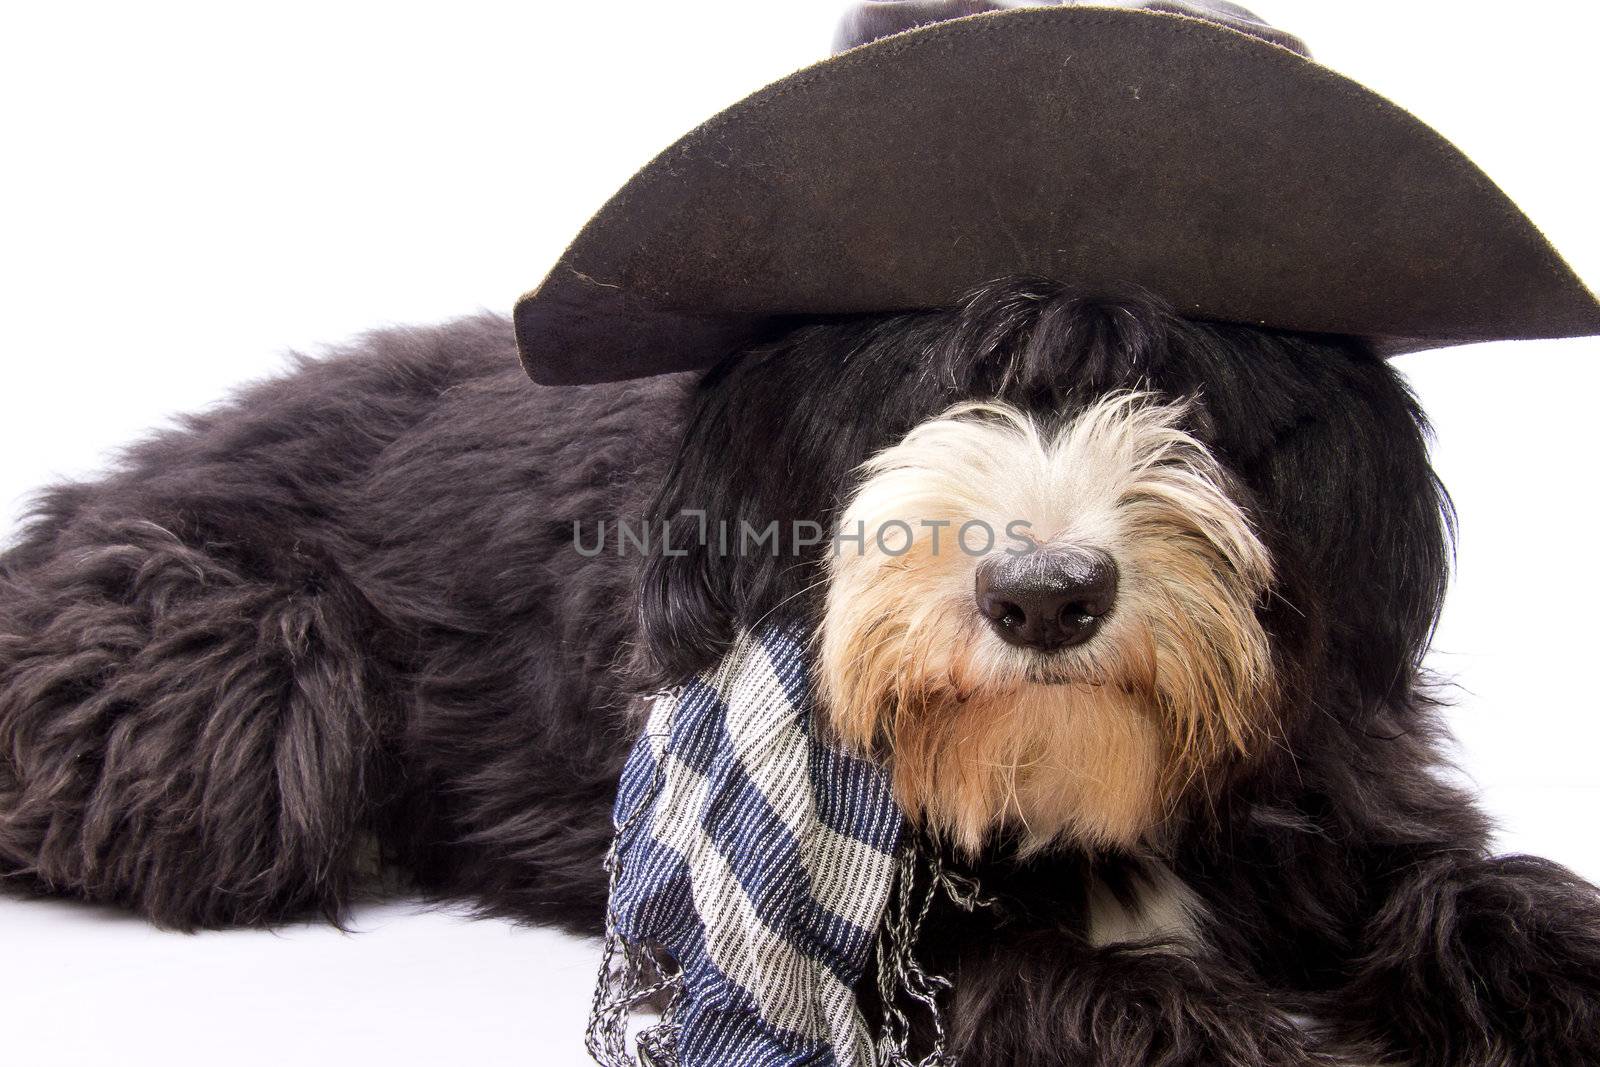 dog dressed as a true Texan cowboy